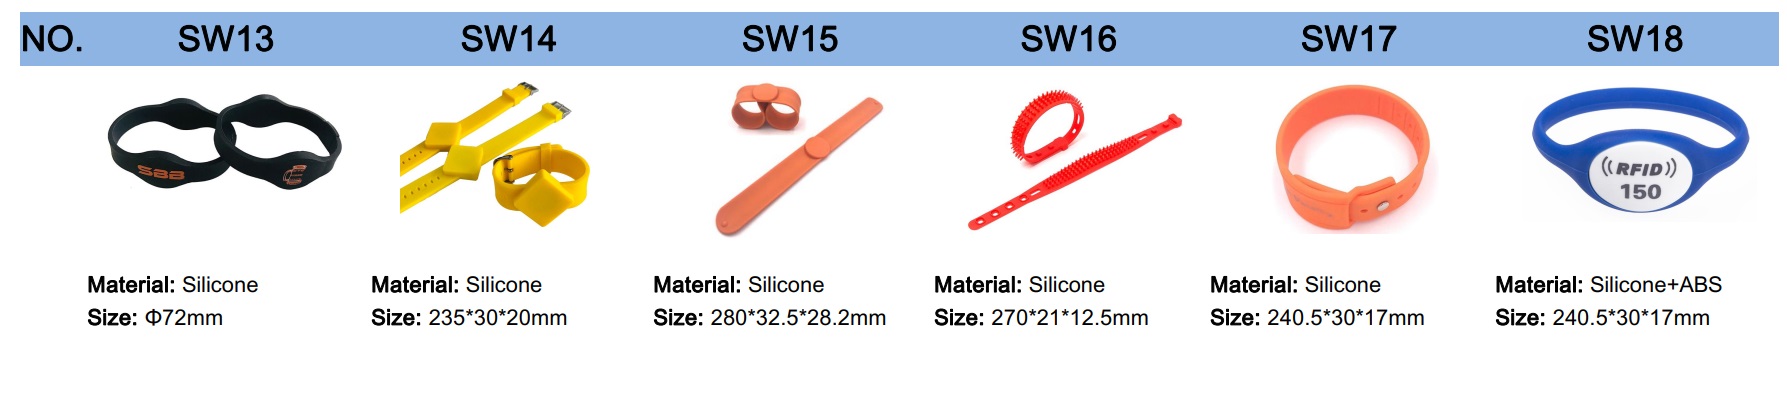 braccialetti-rfid-in-silicone